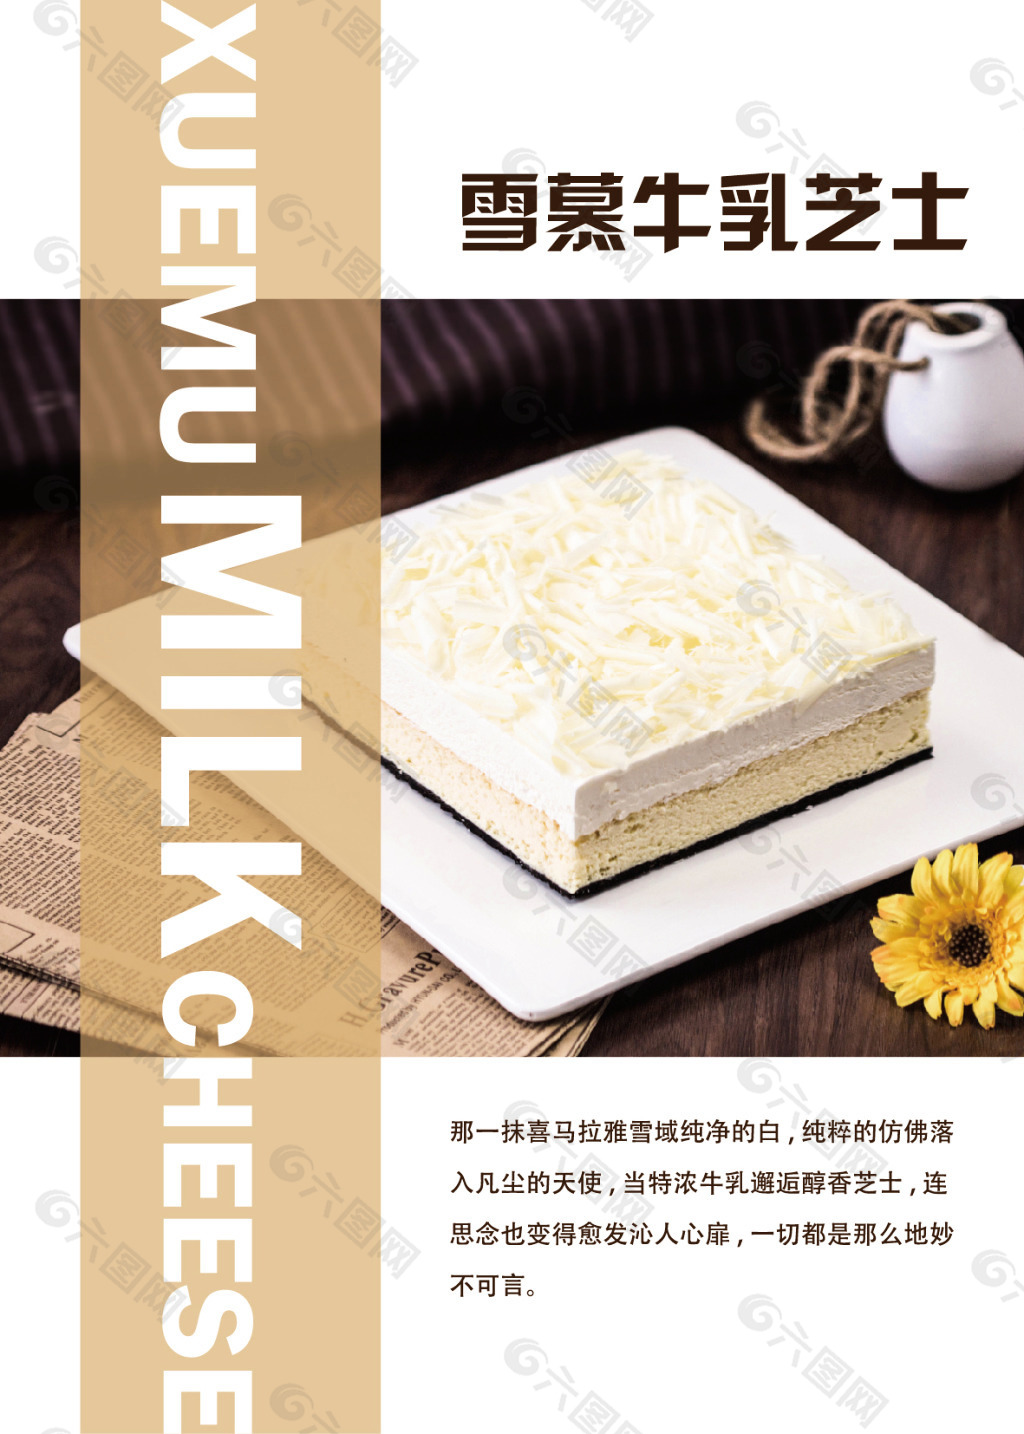 雪慕牛乳芝士蛋糕海报设计